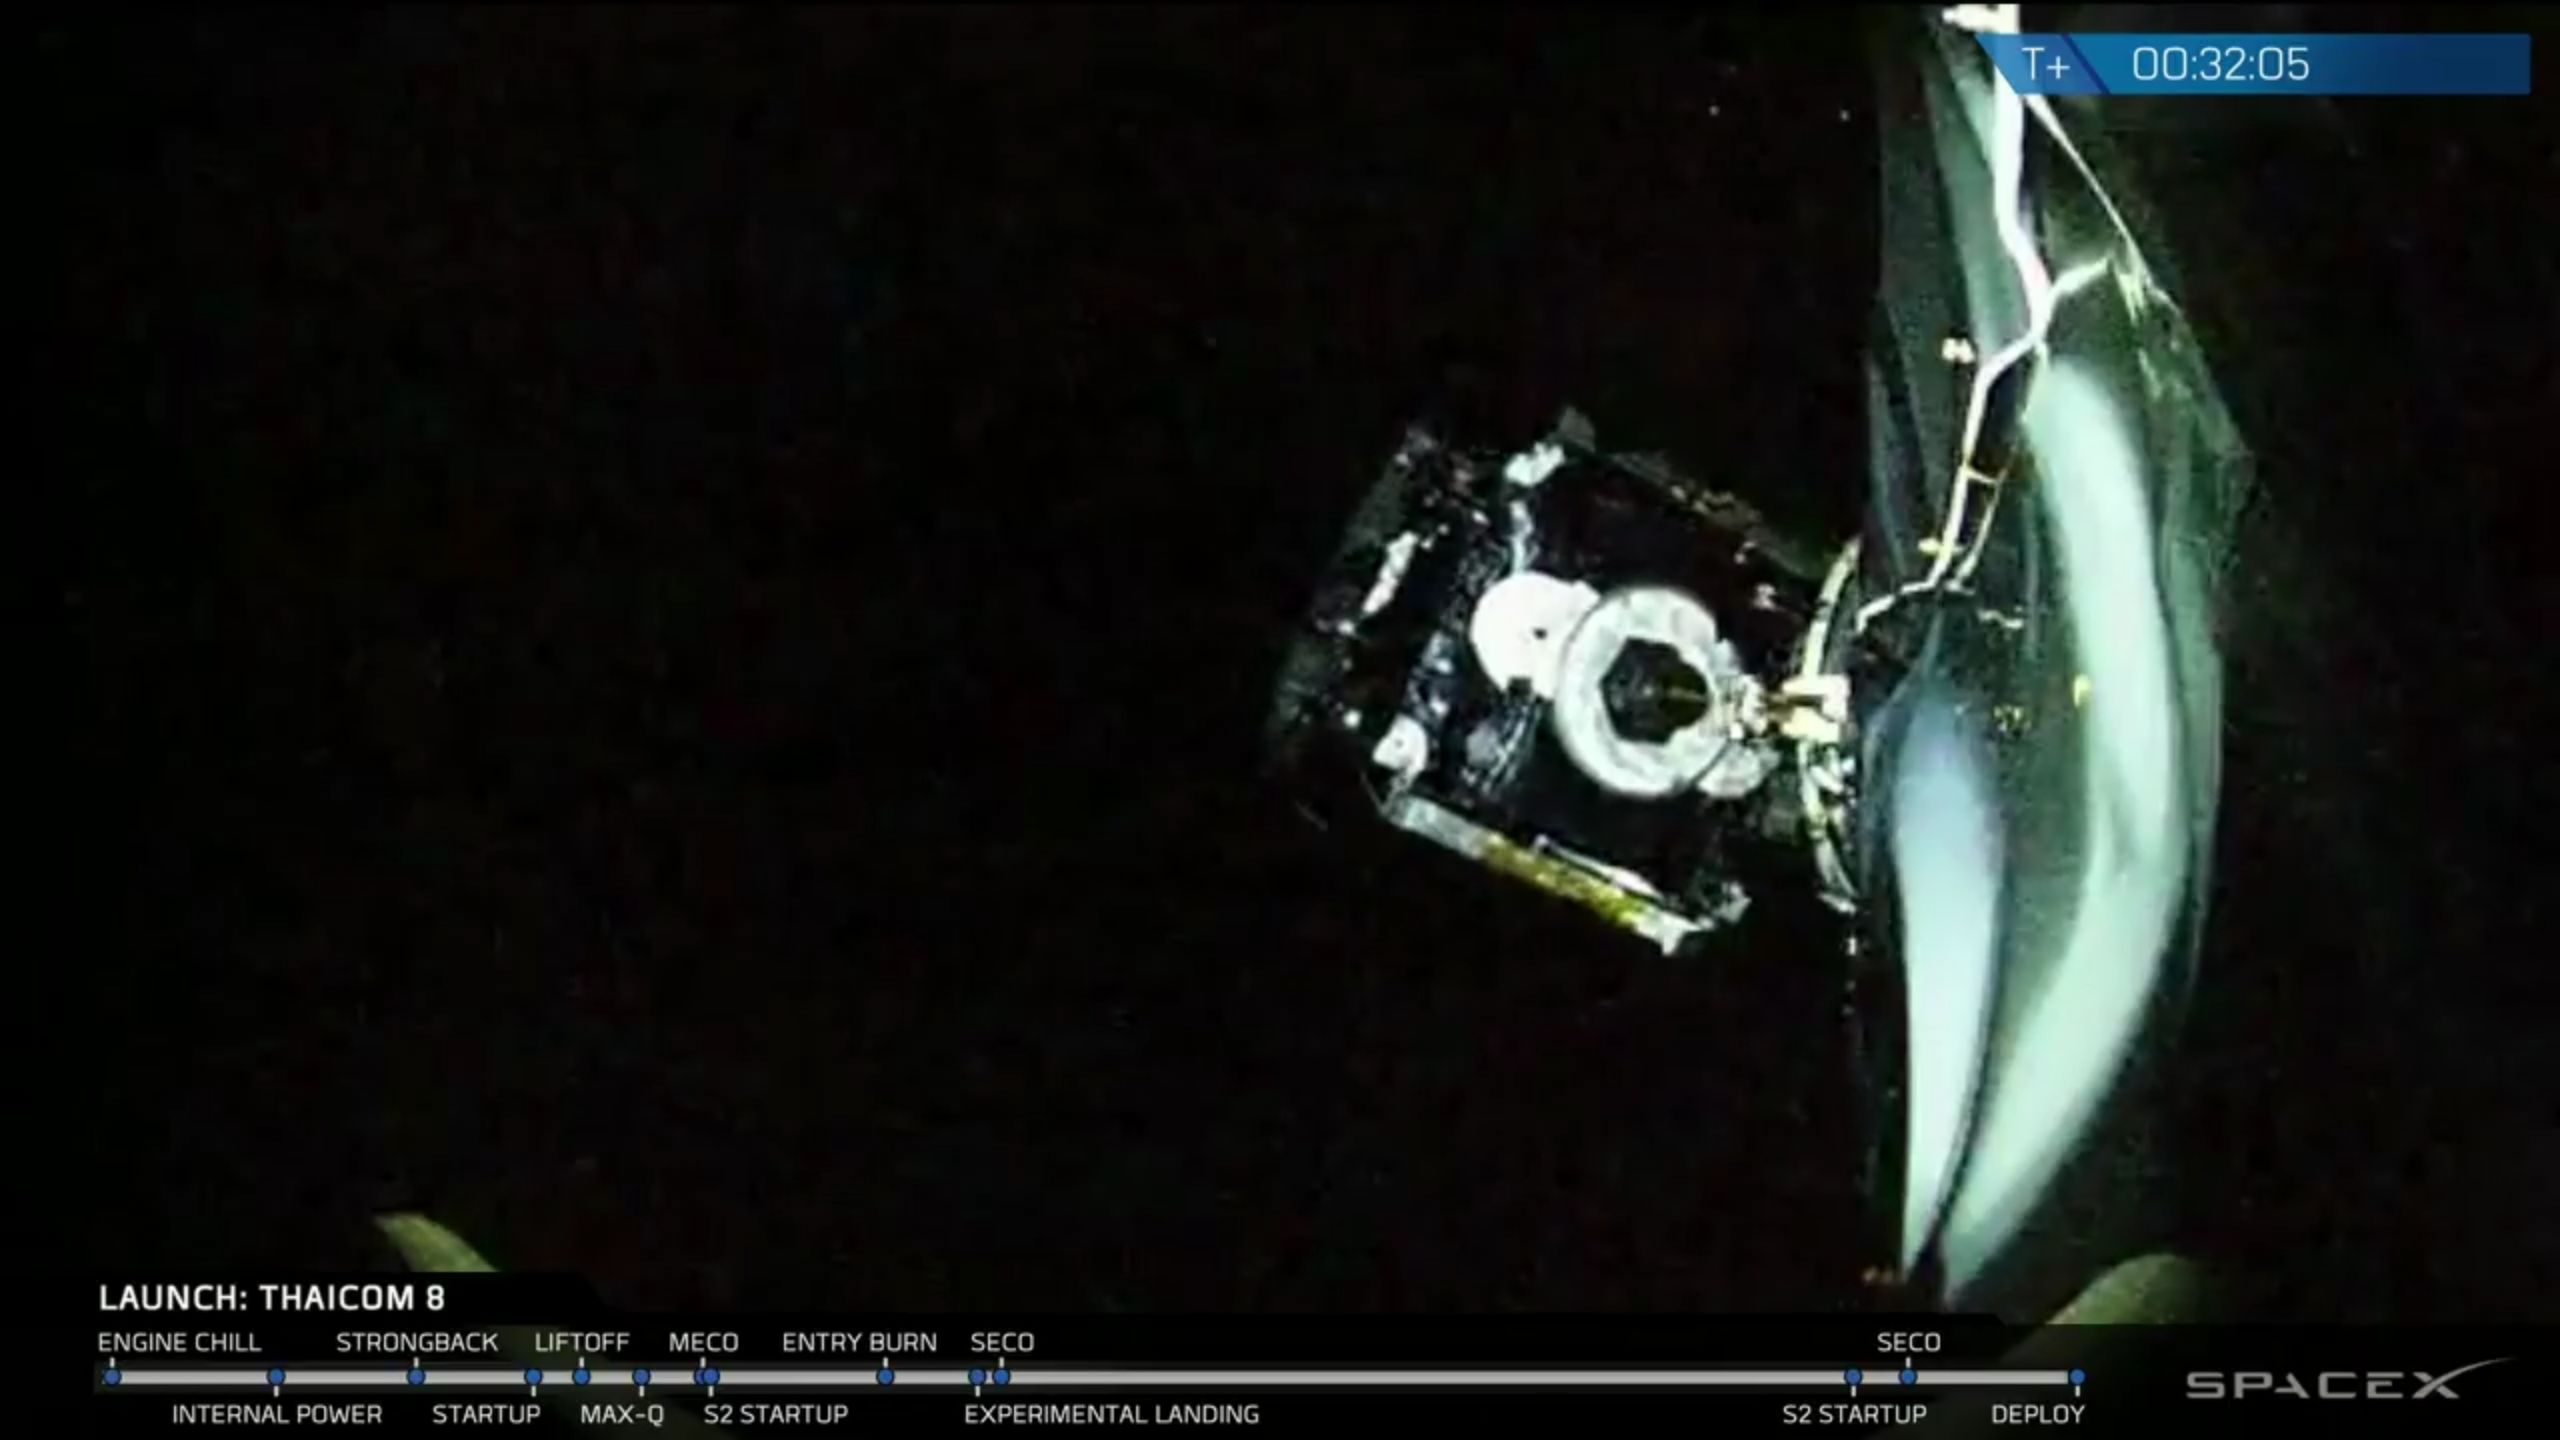 Déploiement du satellite Thaicom8 sur une orbite de transfert super-synchrone par le 2ème étage de la Fusée Falcon9 (Crédit : SpaceX)